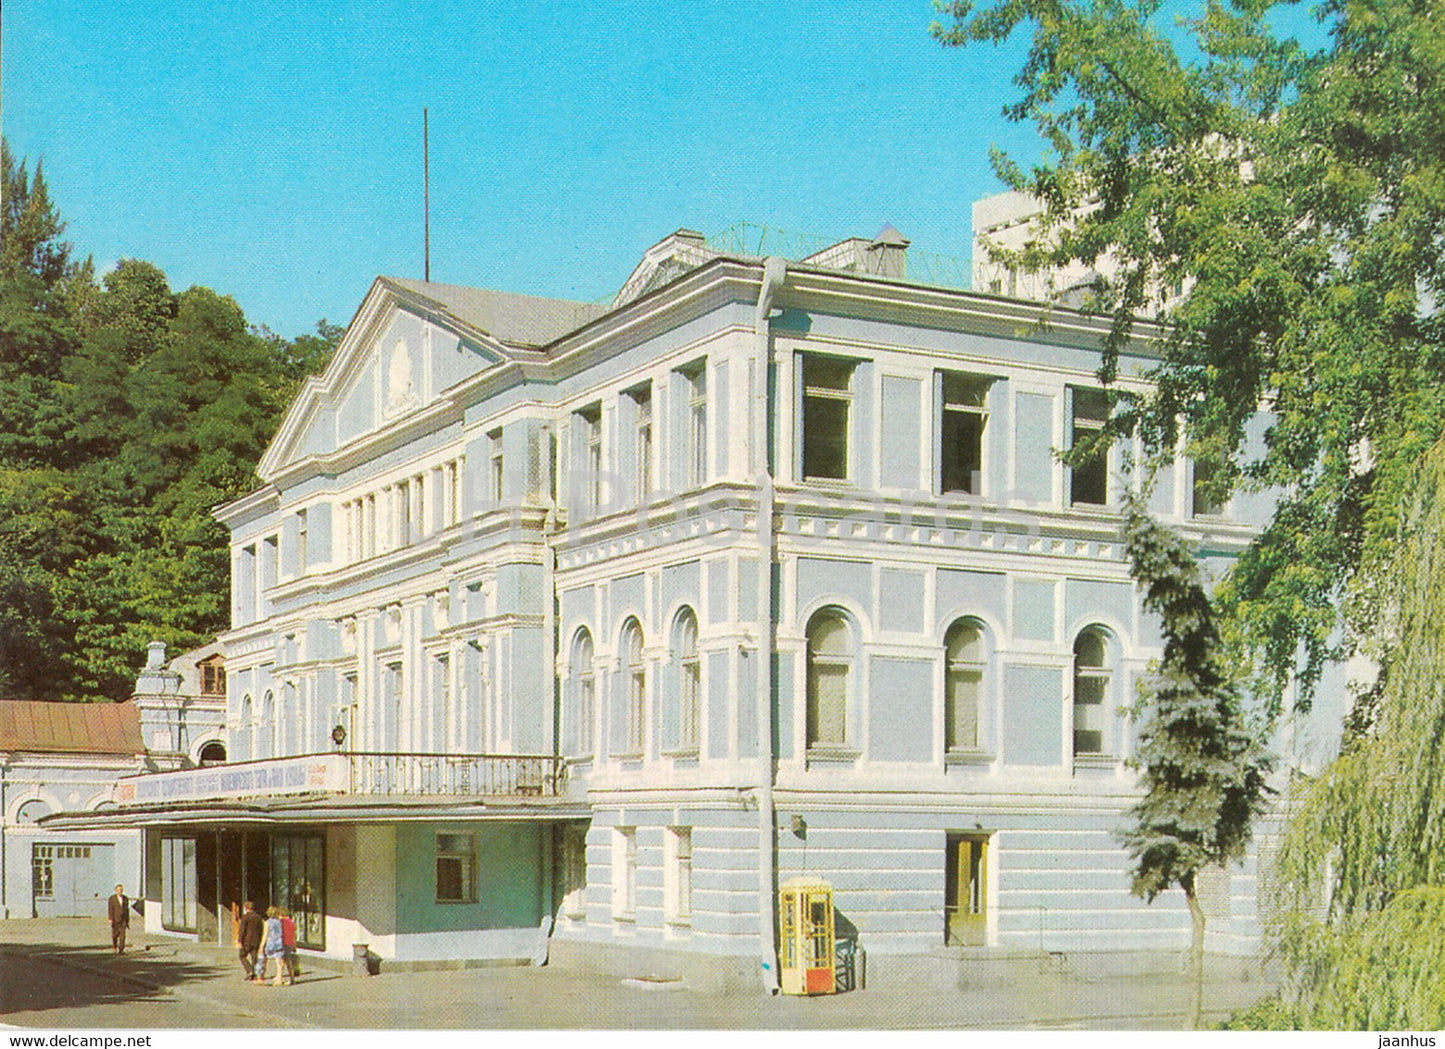 Kyiv - Kiev - Ivan Franko Drama Theatre - postal stationery - 1979 - Ukraine USSR - unused - JH Postcards